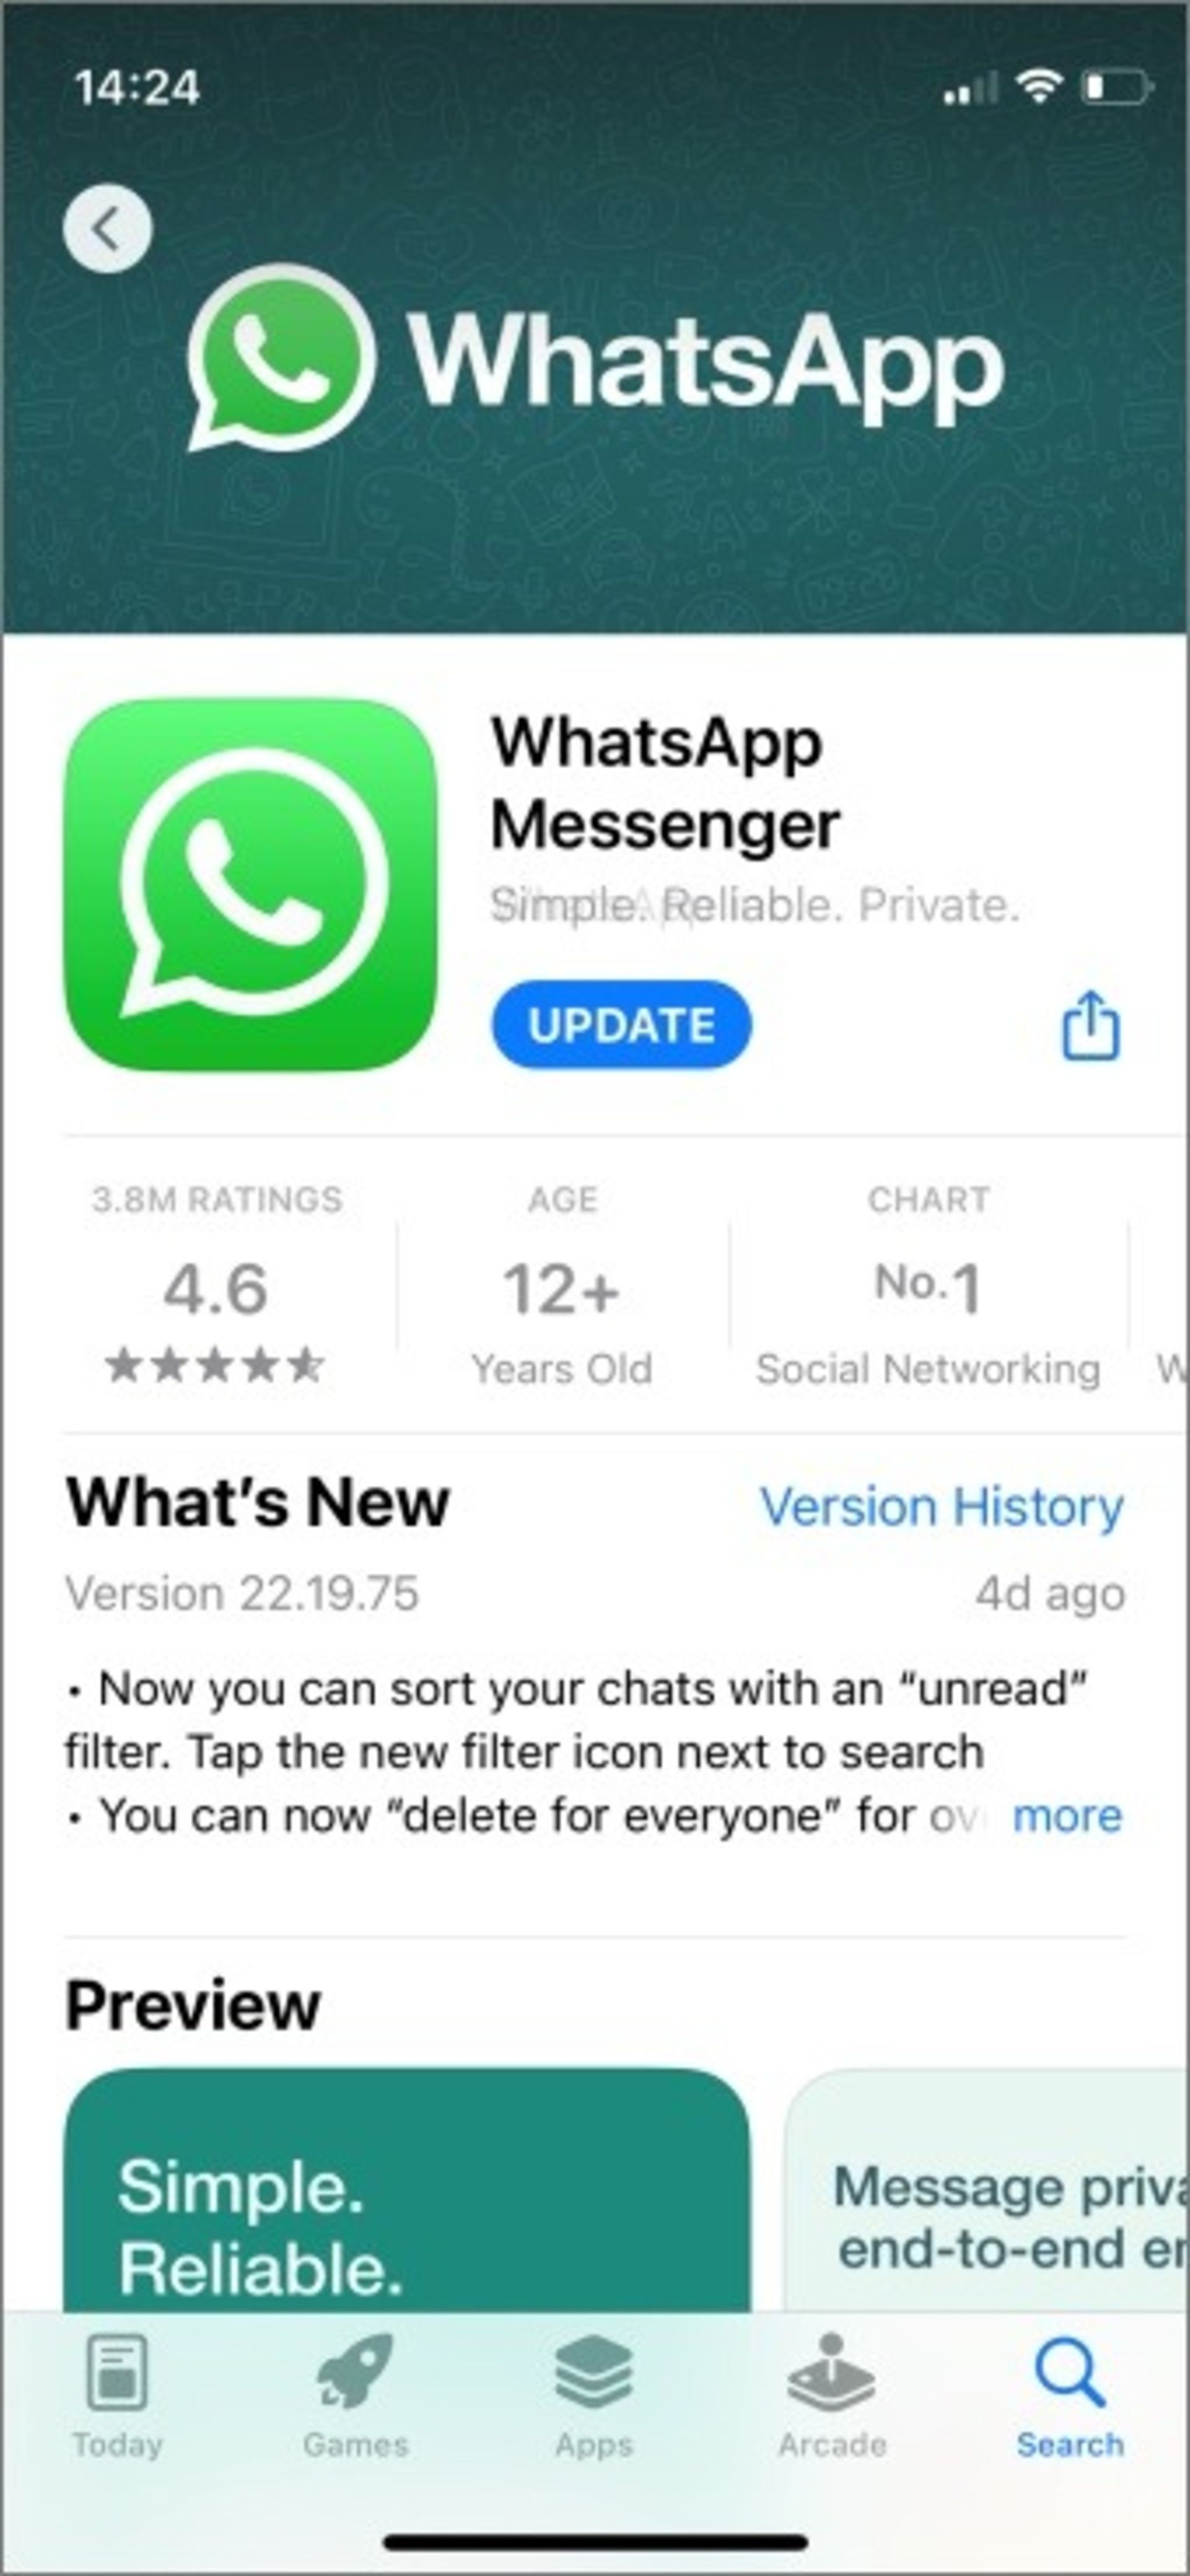 whatsapp update